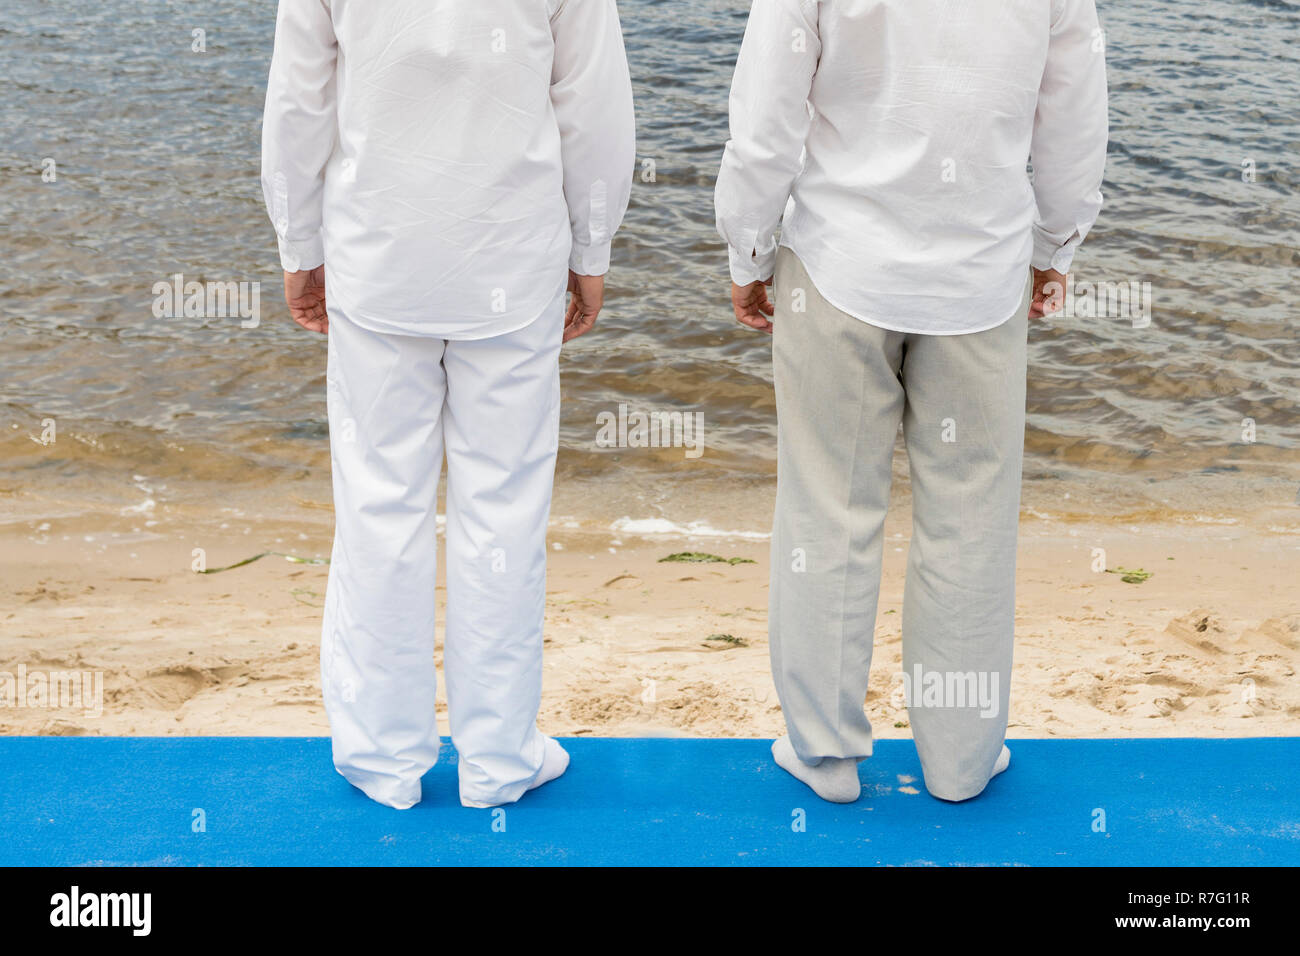 por otra parte, episodio al exilio Dos hombres están planeando el bautismo en agua. Dos hombres en ropa blanca  en frente de un río Fotografía de stock - Alamy